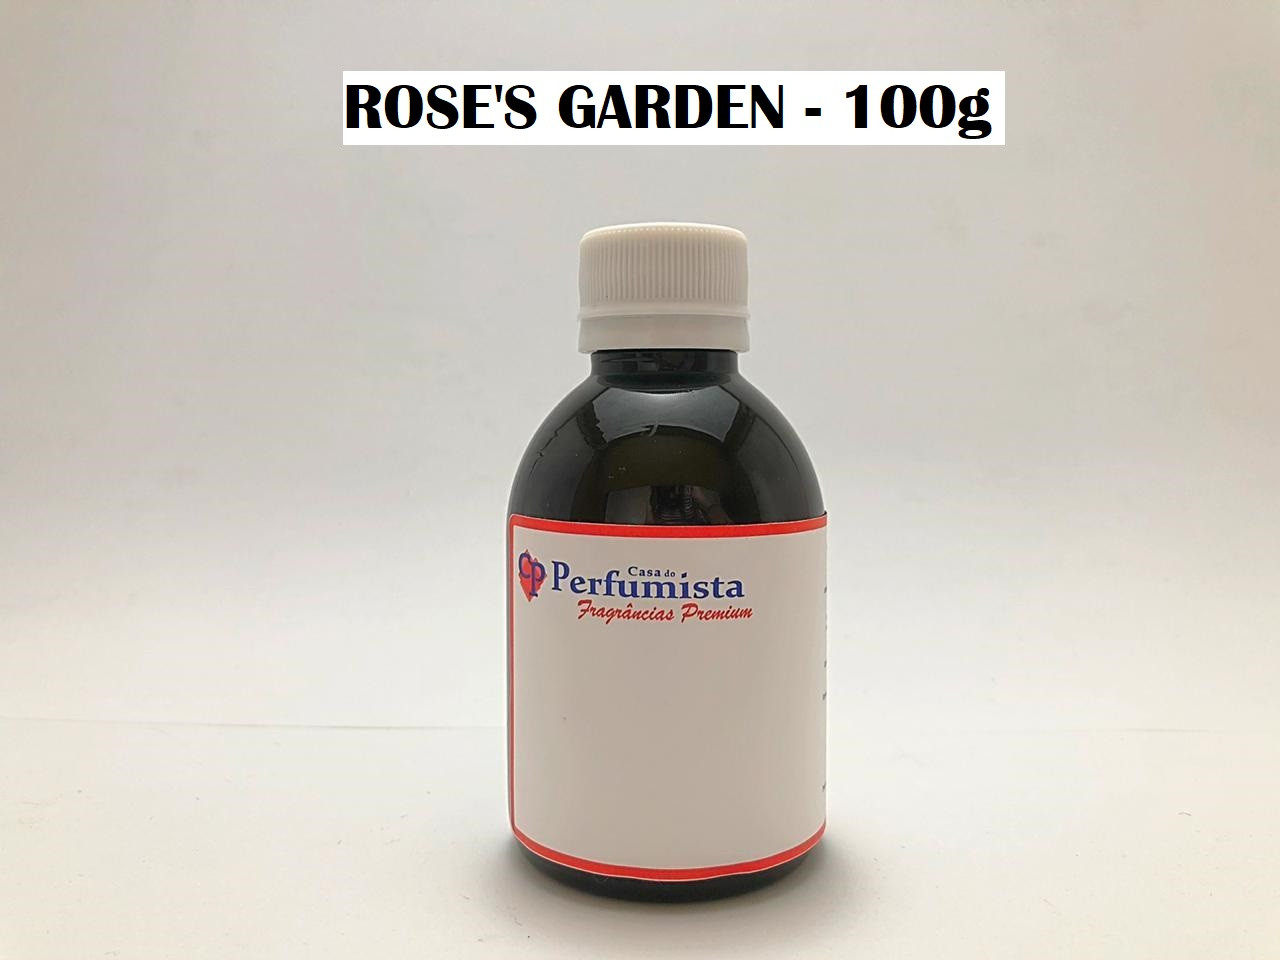 ROSE'S GARDEN - 100g